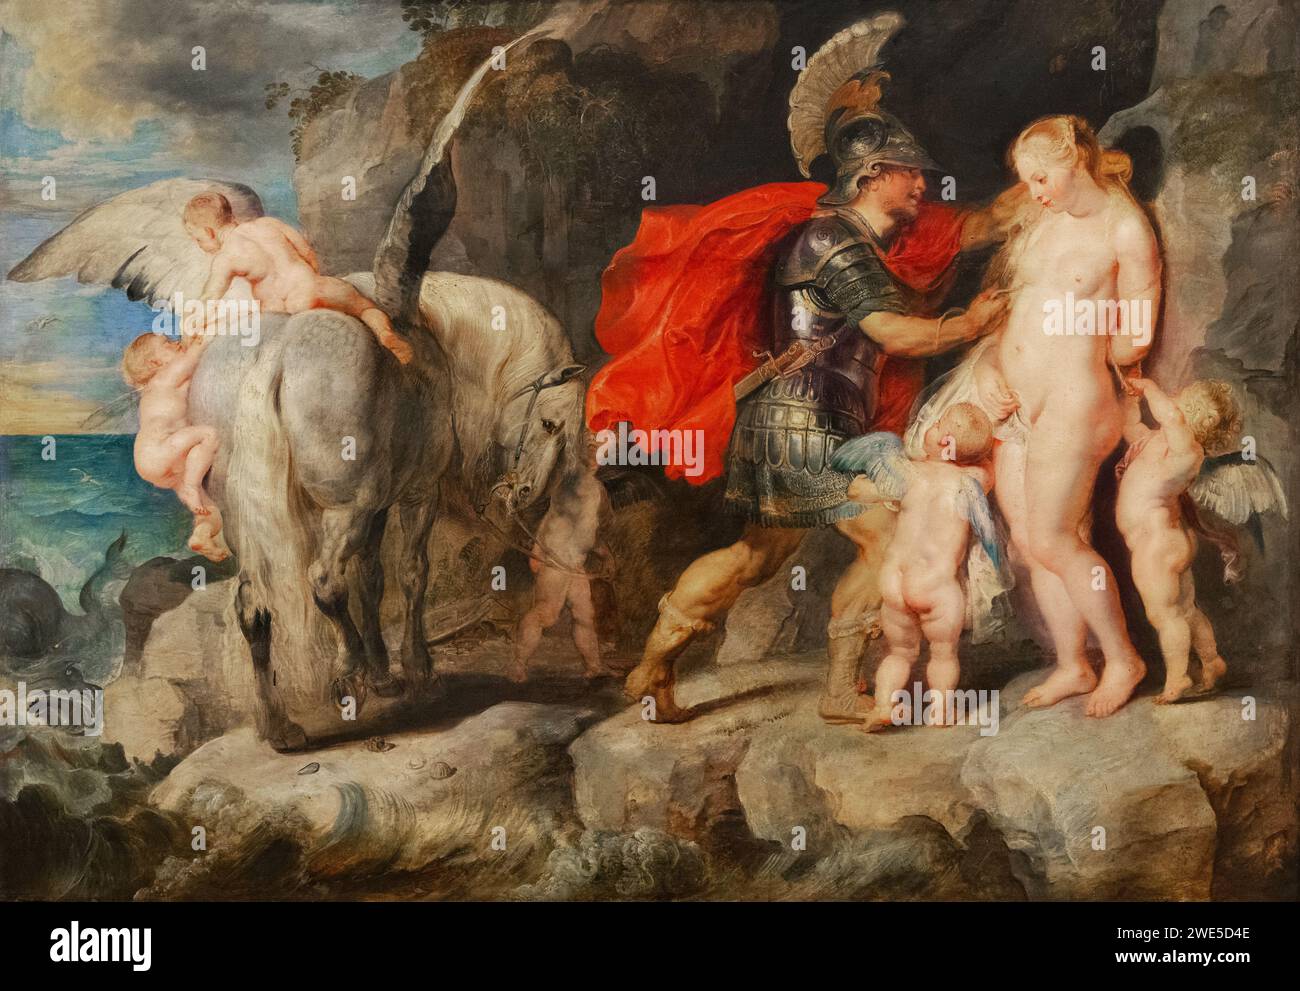 Sir Peter Paul Rubens dipinto, 'Perseo libera Andromeda', 1620-22; dipinto di una scena dalla mitologia greca. pittura in stile barocco del xvii secolo. Foto Stock